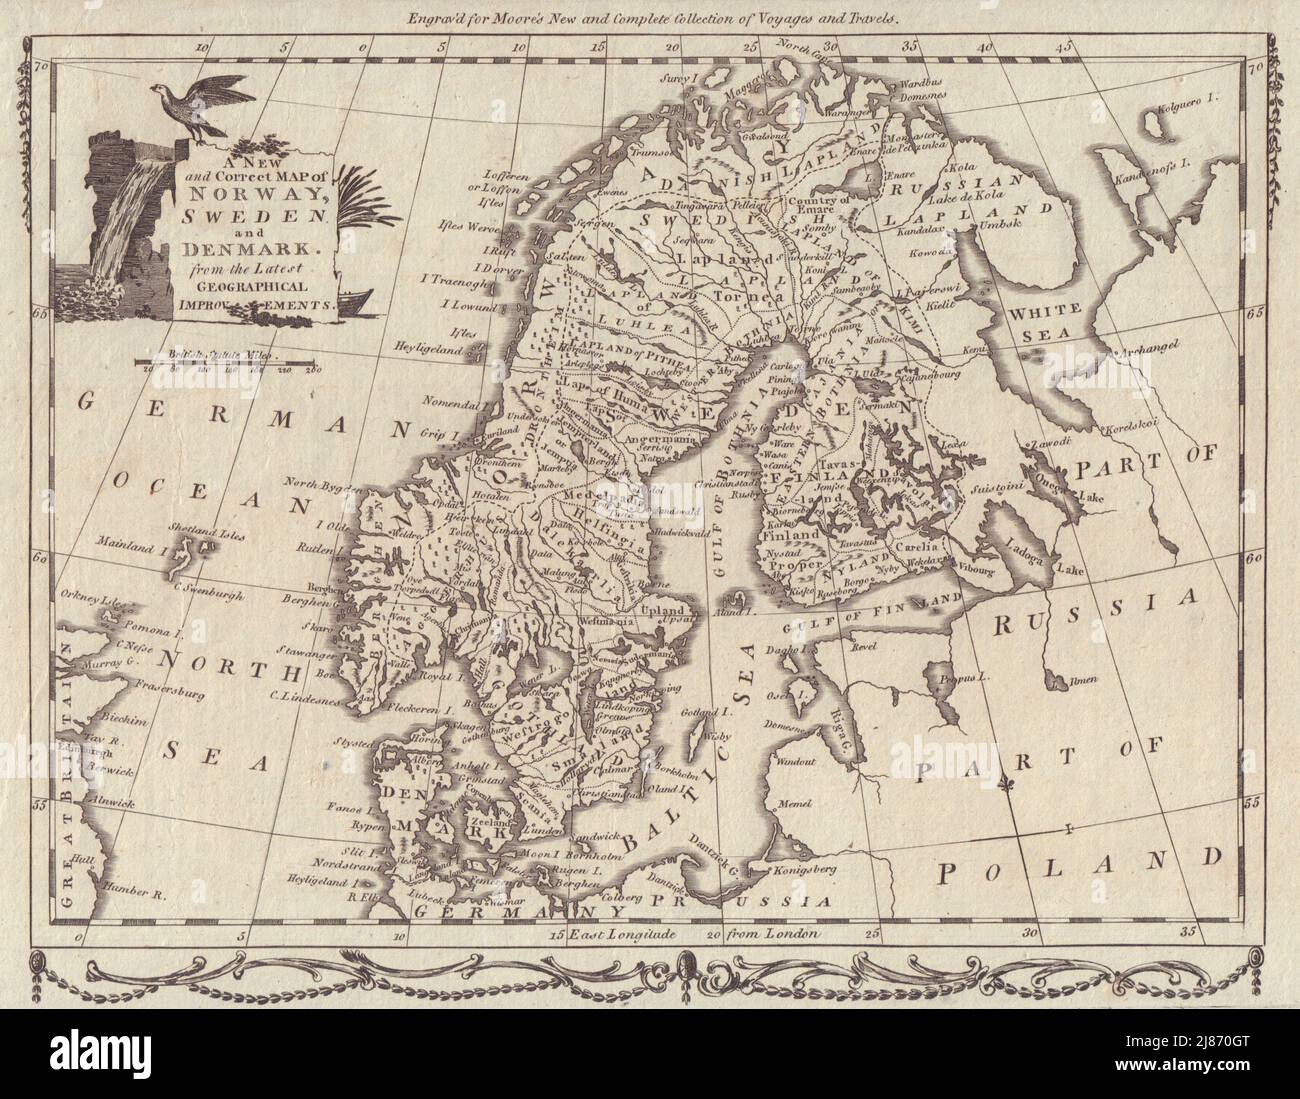 Une nouvelle carte correcte de la Norvège, de la Suède et du Danemark. Finlande. MOORE 1788 Banque D'Images